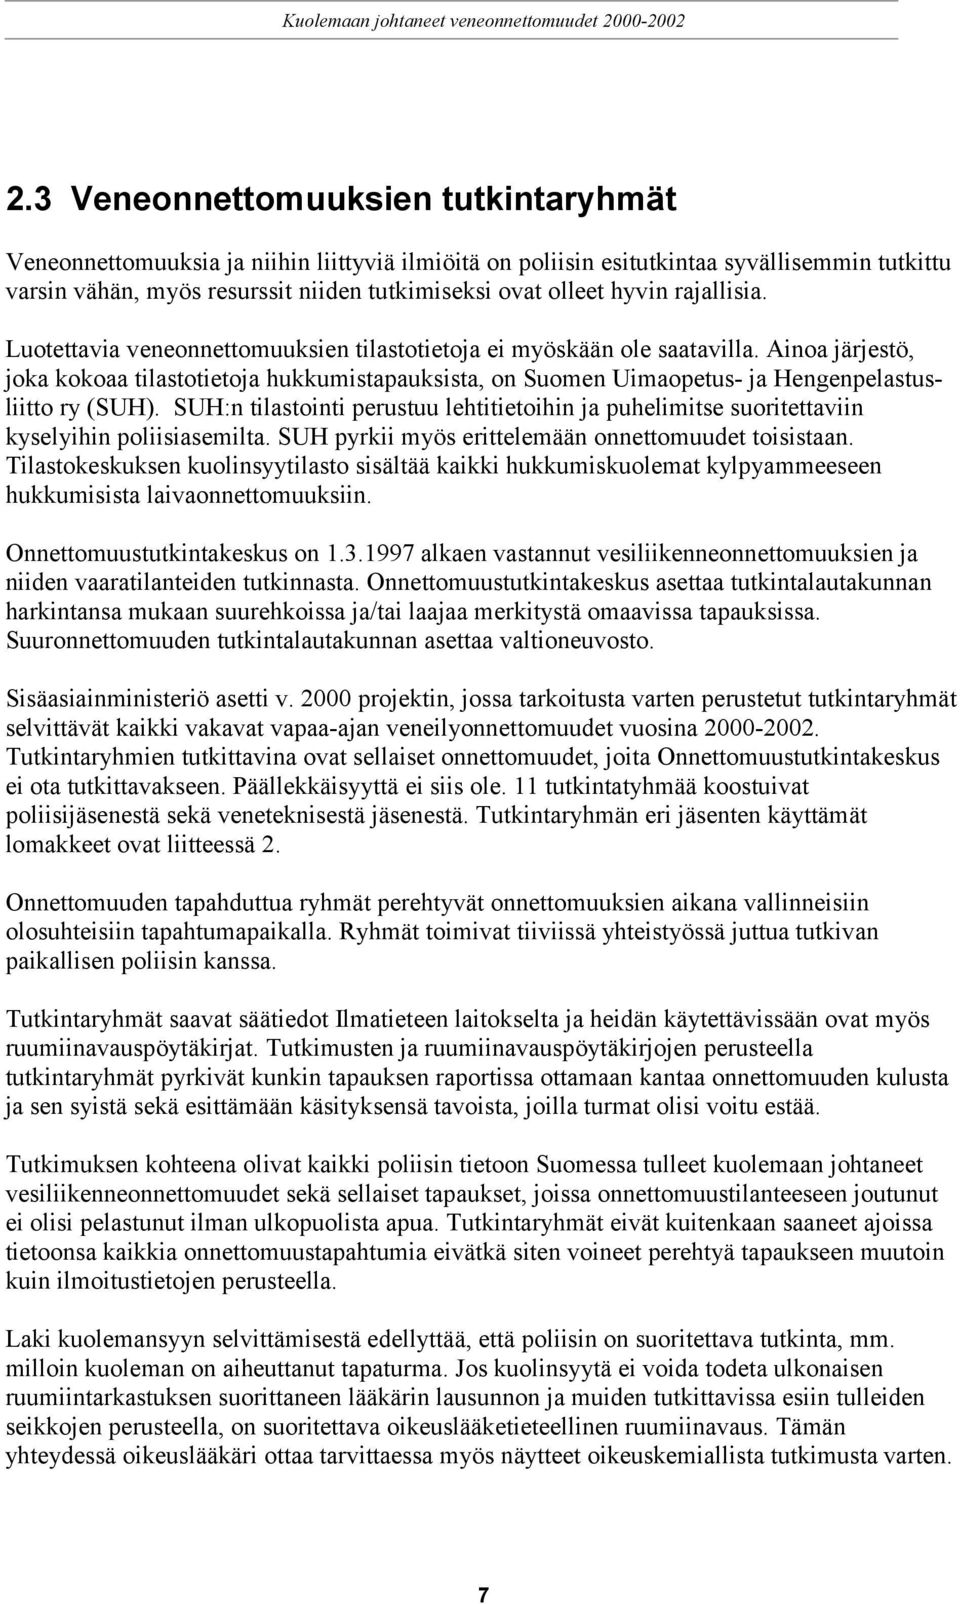 Ainoa järjestö, joka kokoaa tilastotietoja hukkumistapauksista, on Suomen Uimaopetus- ja Hengenpelastusliitto ry (SUH).